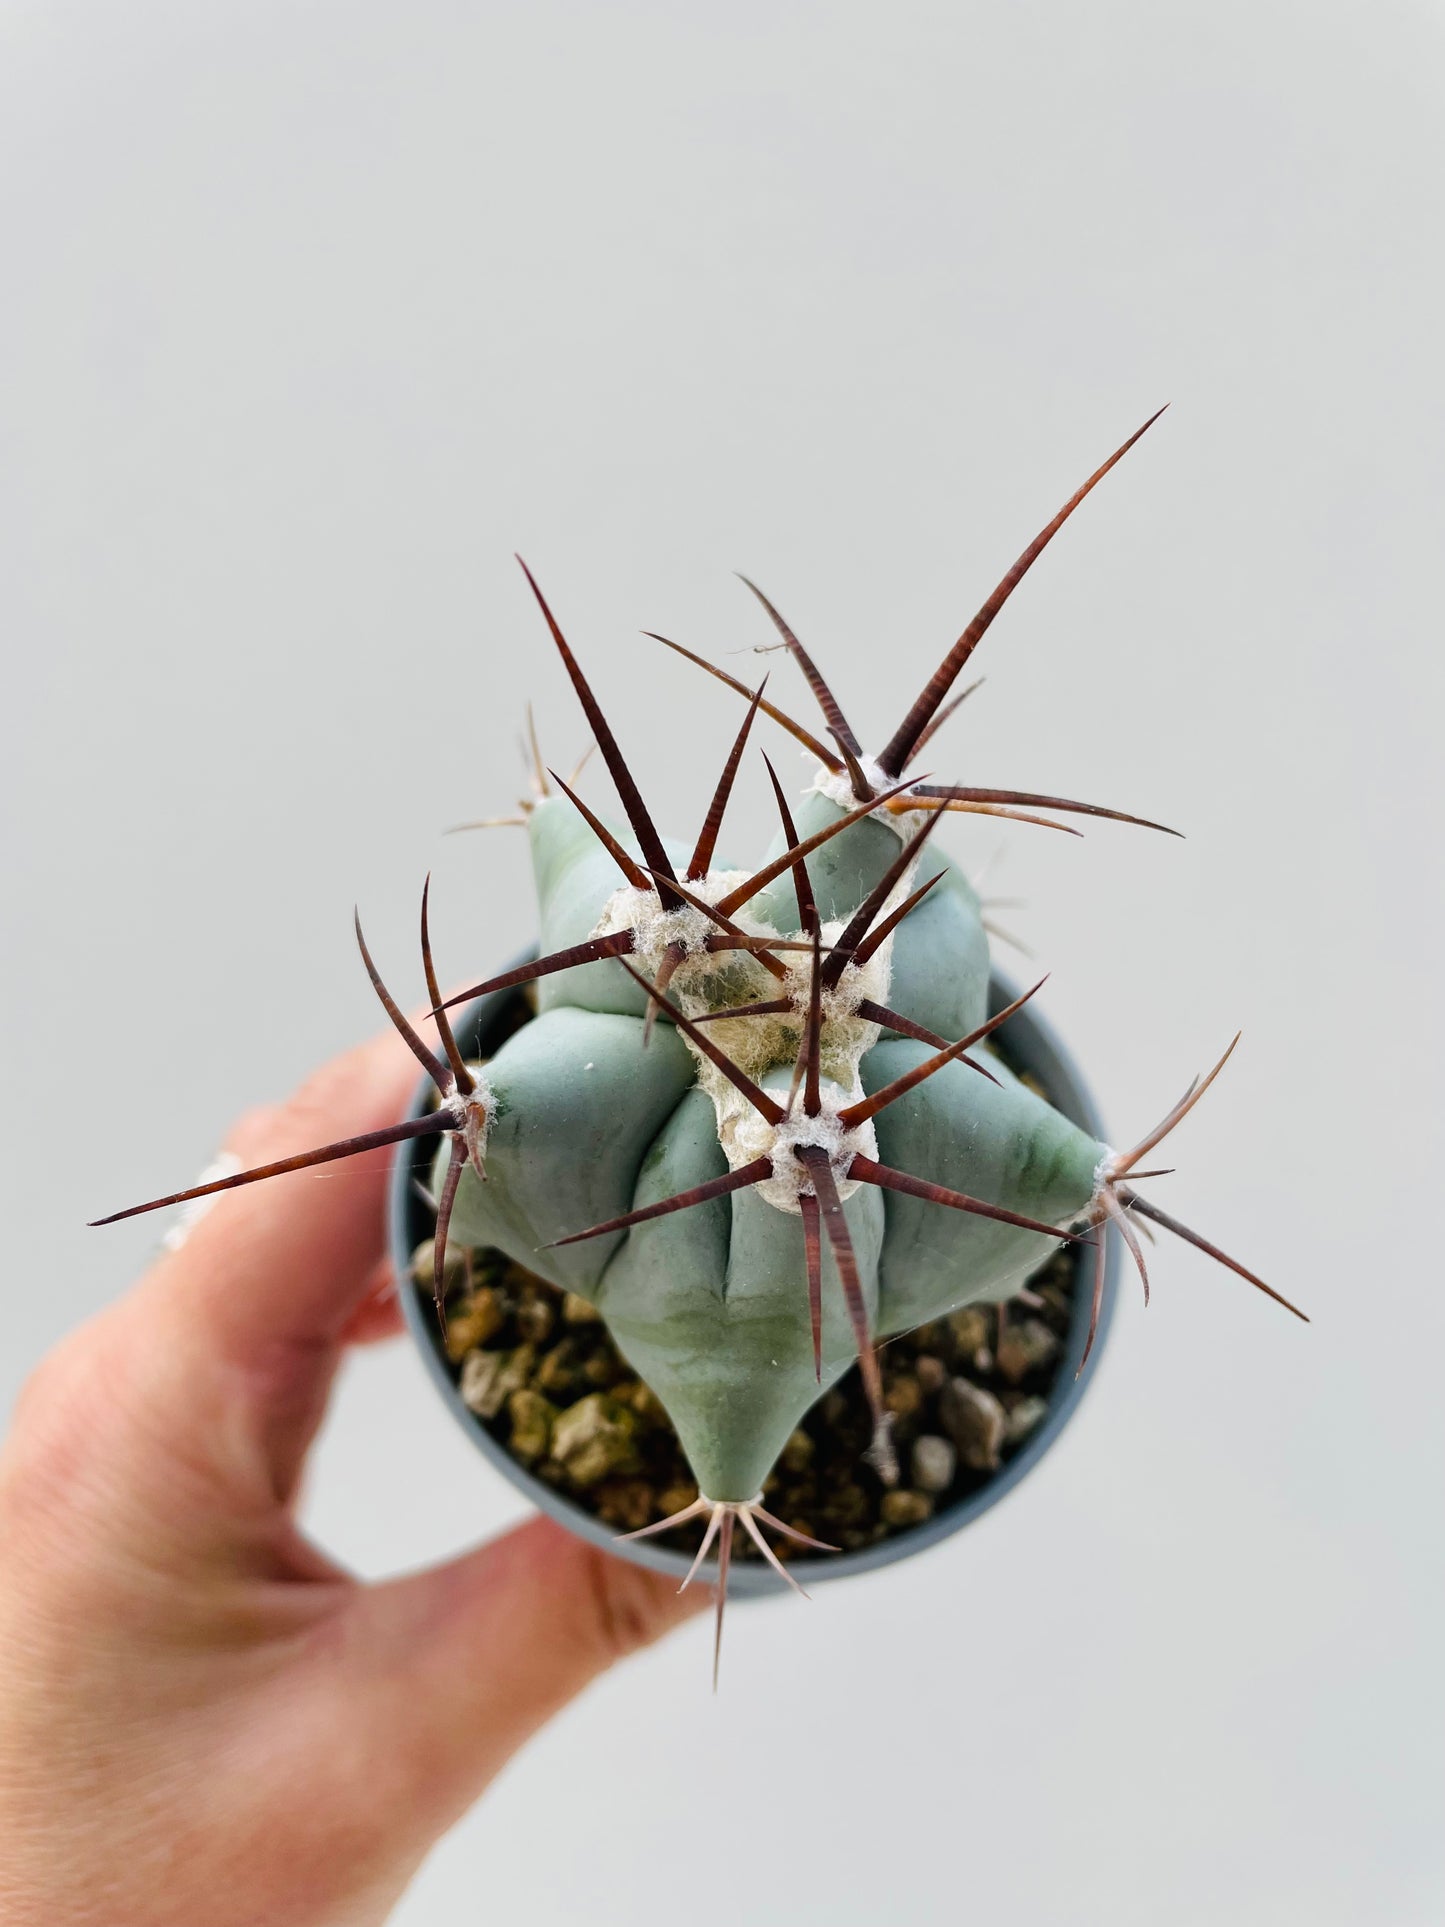 Bilde av Echinocactus ingens 6 cm potte-Spanne Plantesalg